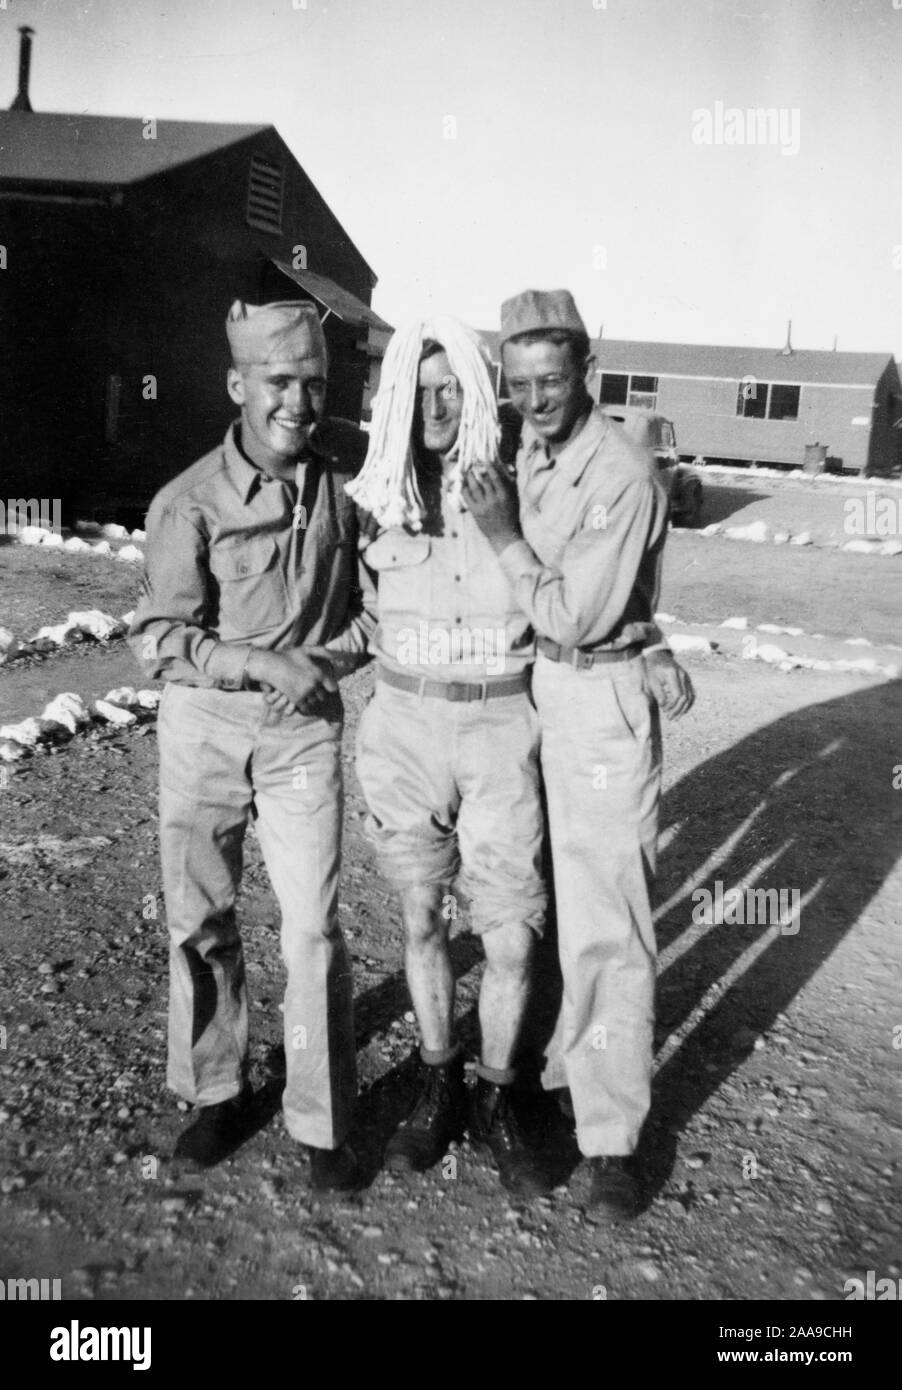 Deux marins de l'US Navy posent avec 'blonde', alors stationnés sur l'île pendant la Seconde Guerre mondiale. Banque D'Images